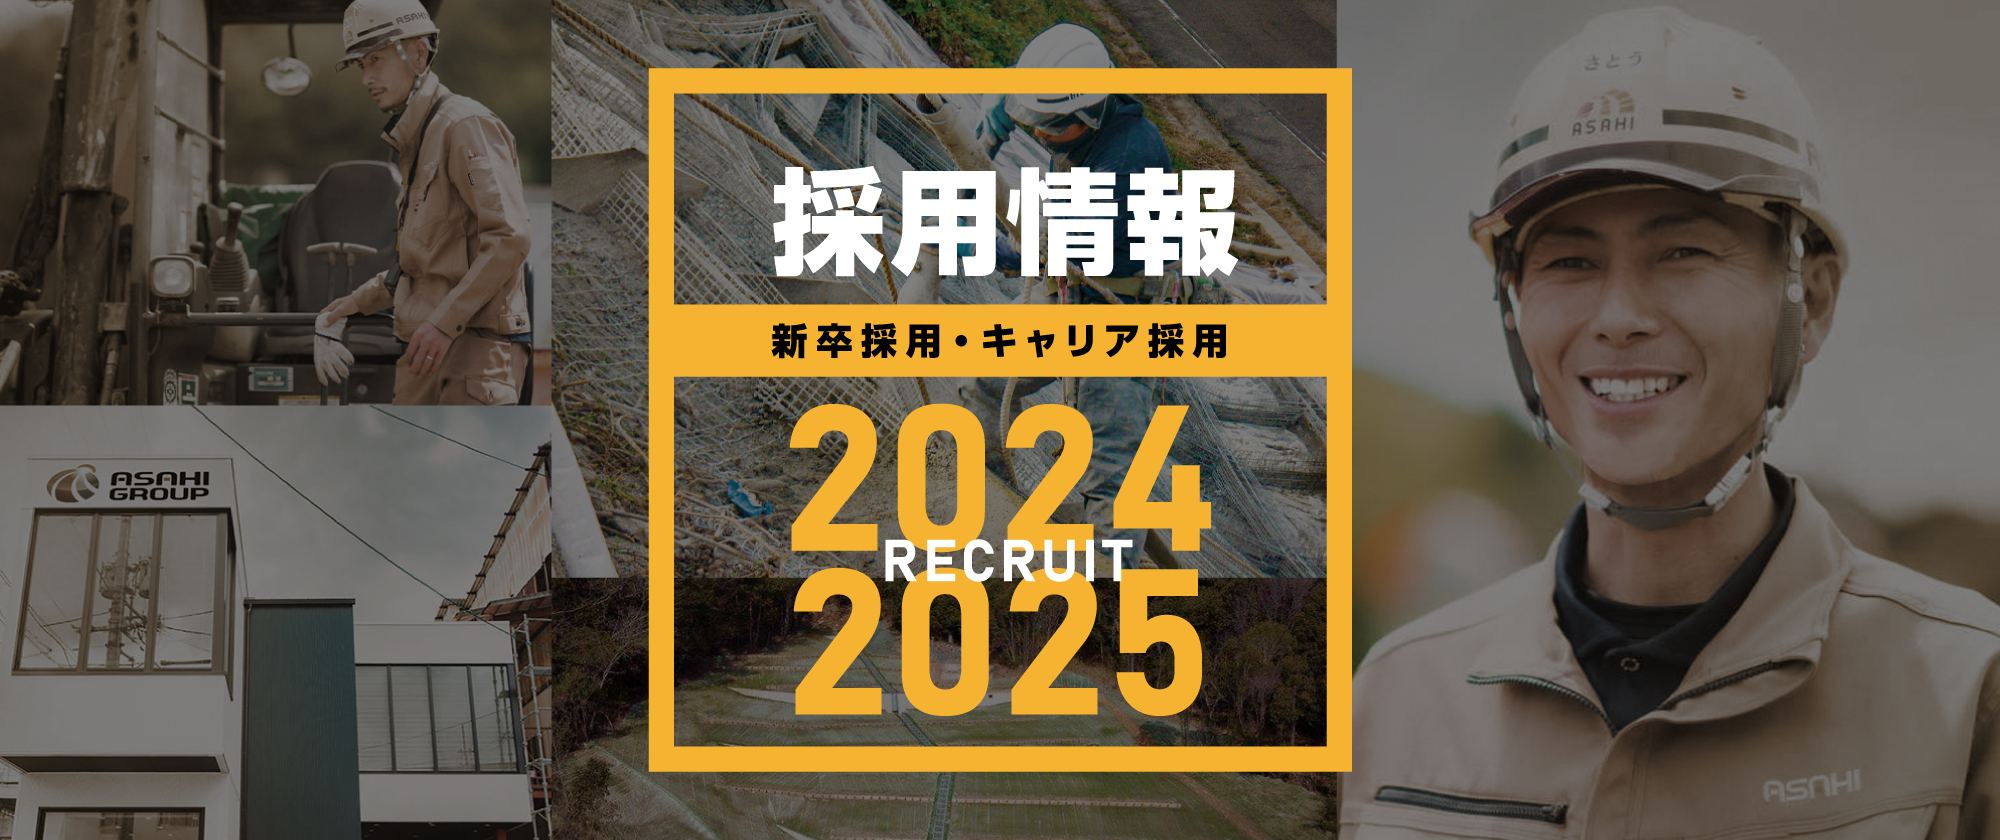 朝日グループ 採用情報 RECRUIT 2024